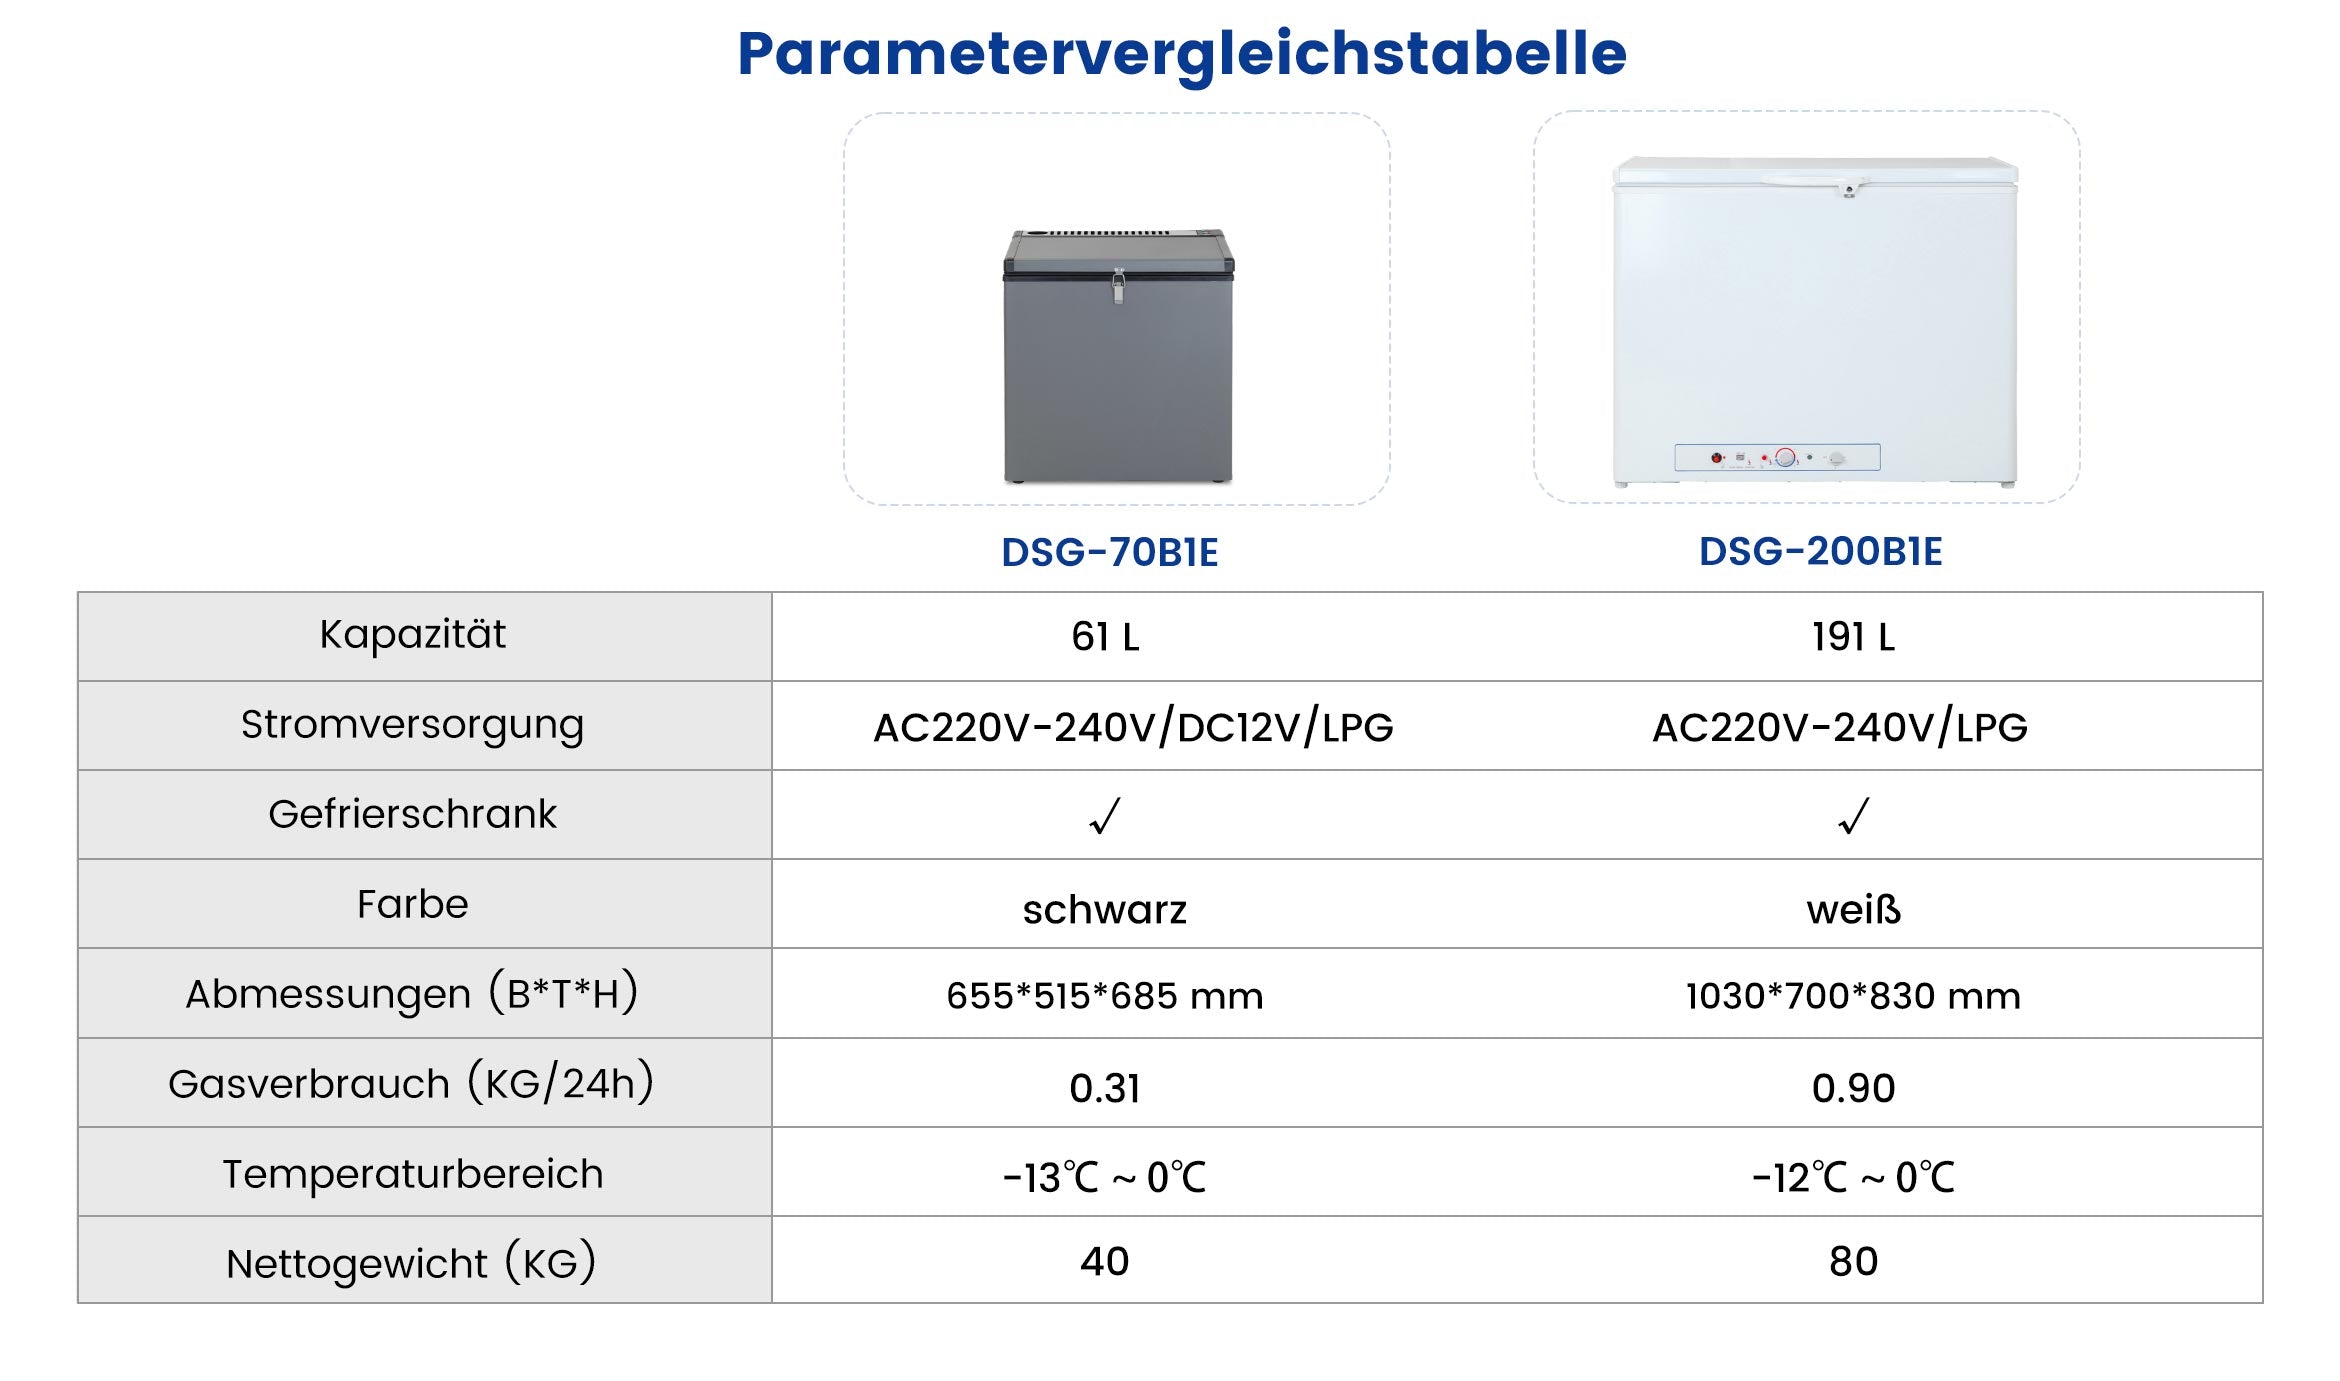 DSG-200B1E Parametervergleichstabelle